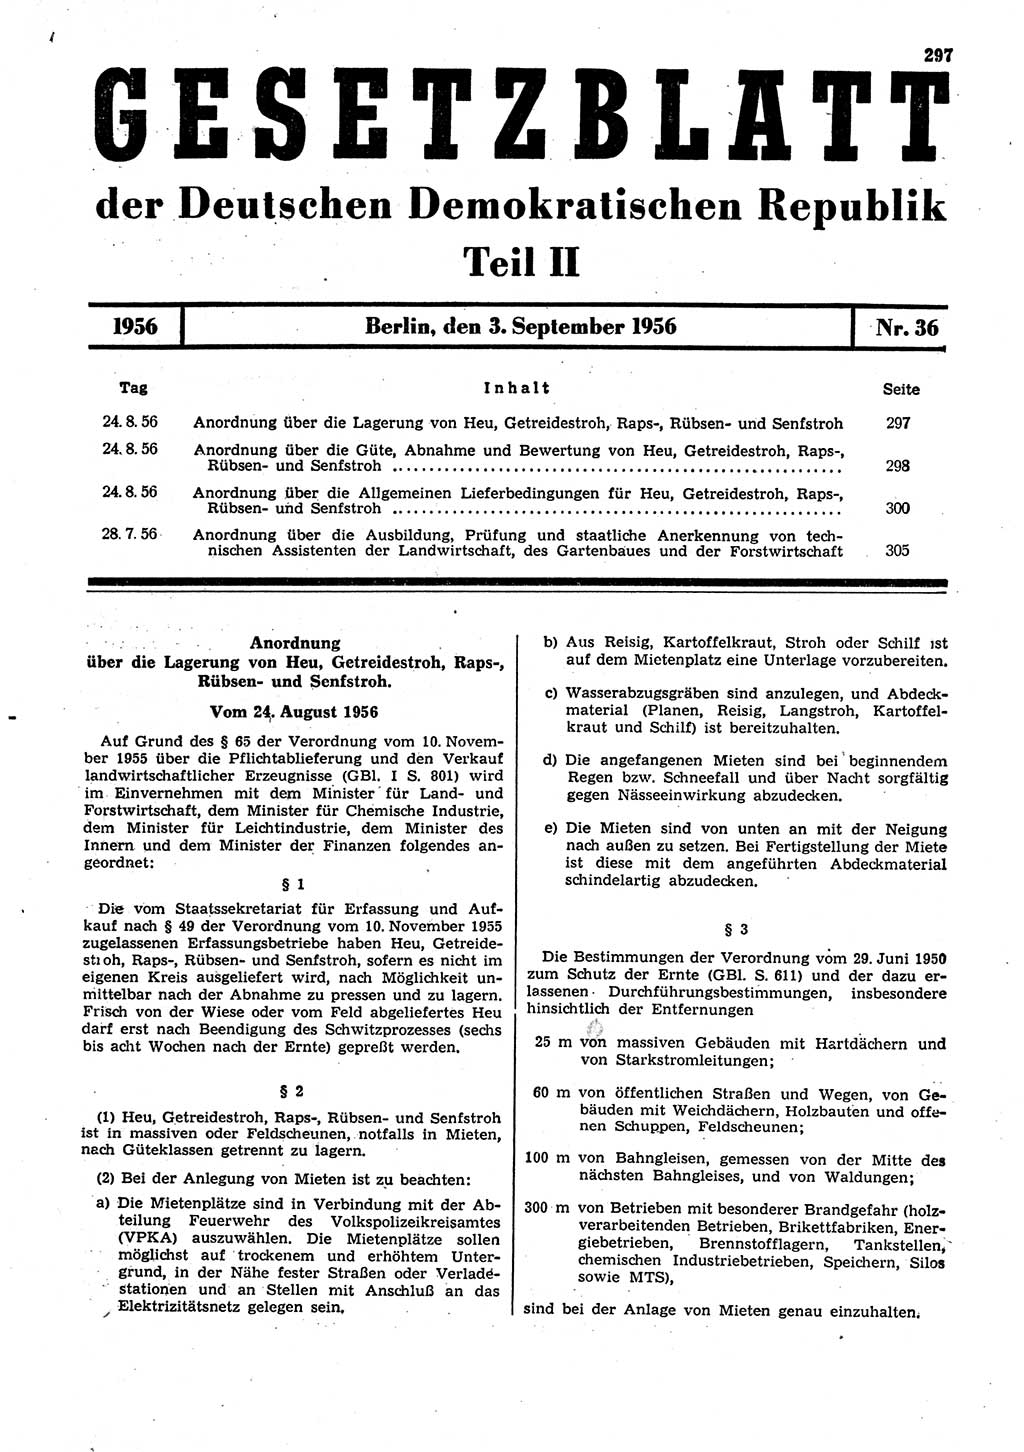 Gesetzblatt (GBl.) der Deutschen Demokratischen Republik (DDR) Teil ⅠⅠ 1956, Seite 297 (GBl. DDR ⅠⅠ 1956, S. 297)